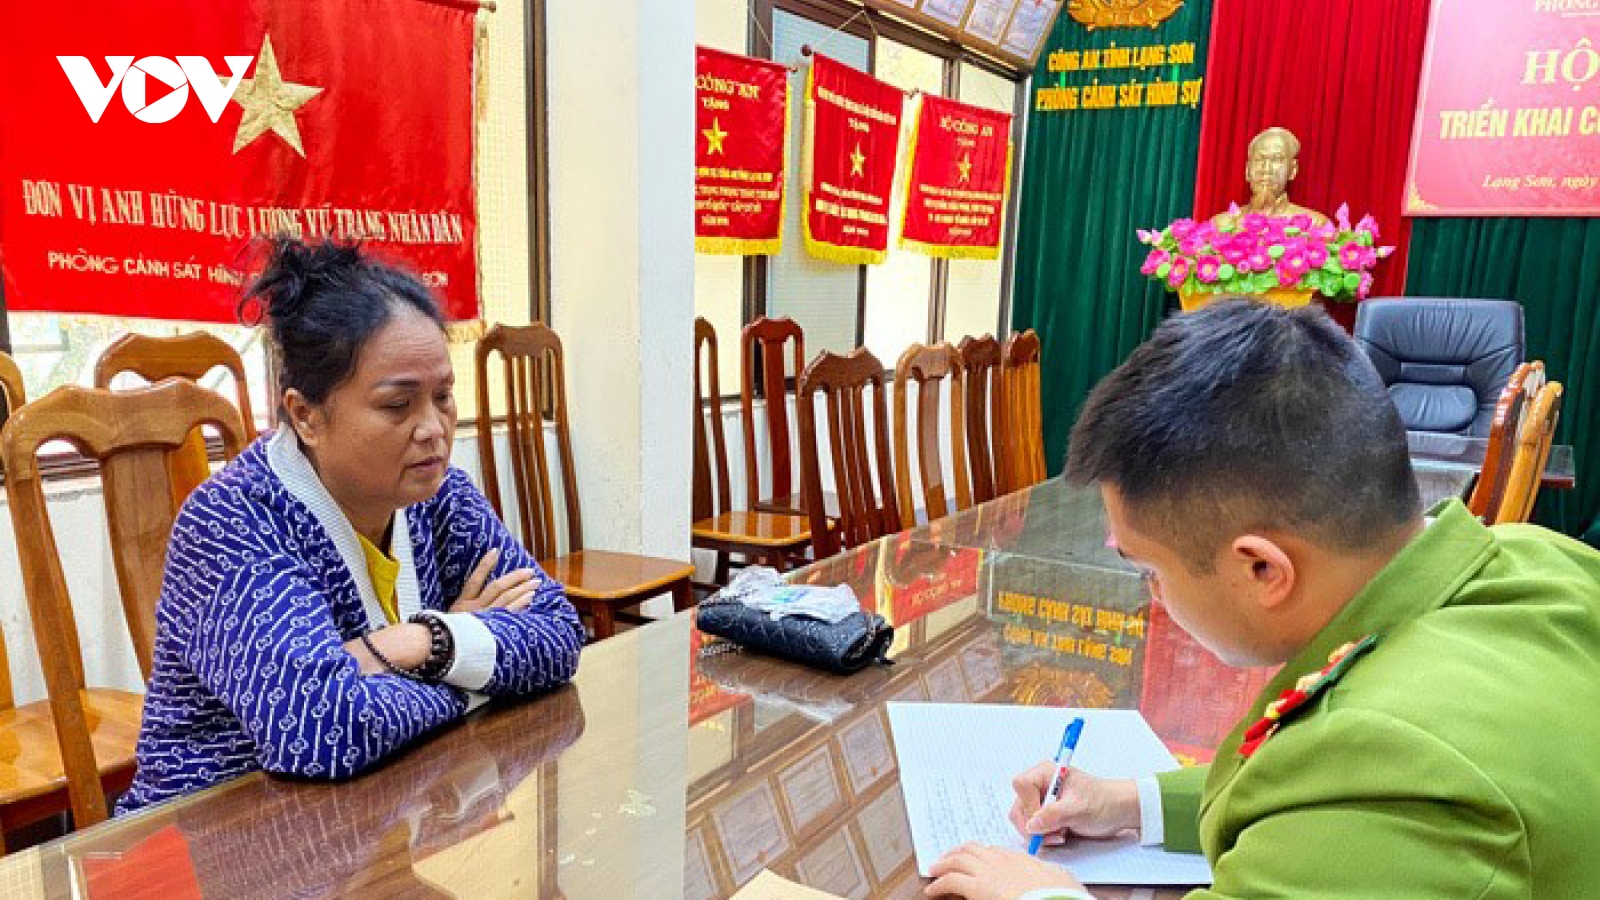 Lạng Sơn: Lừa bán găng tay y tế để chiếm đoạt hơn 3,1 tỷ đồng